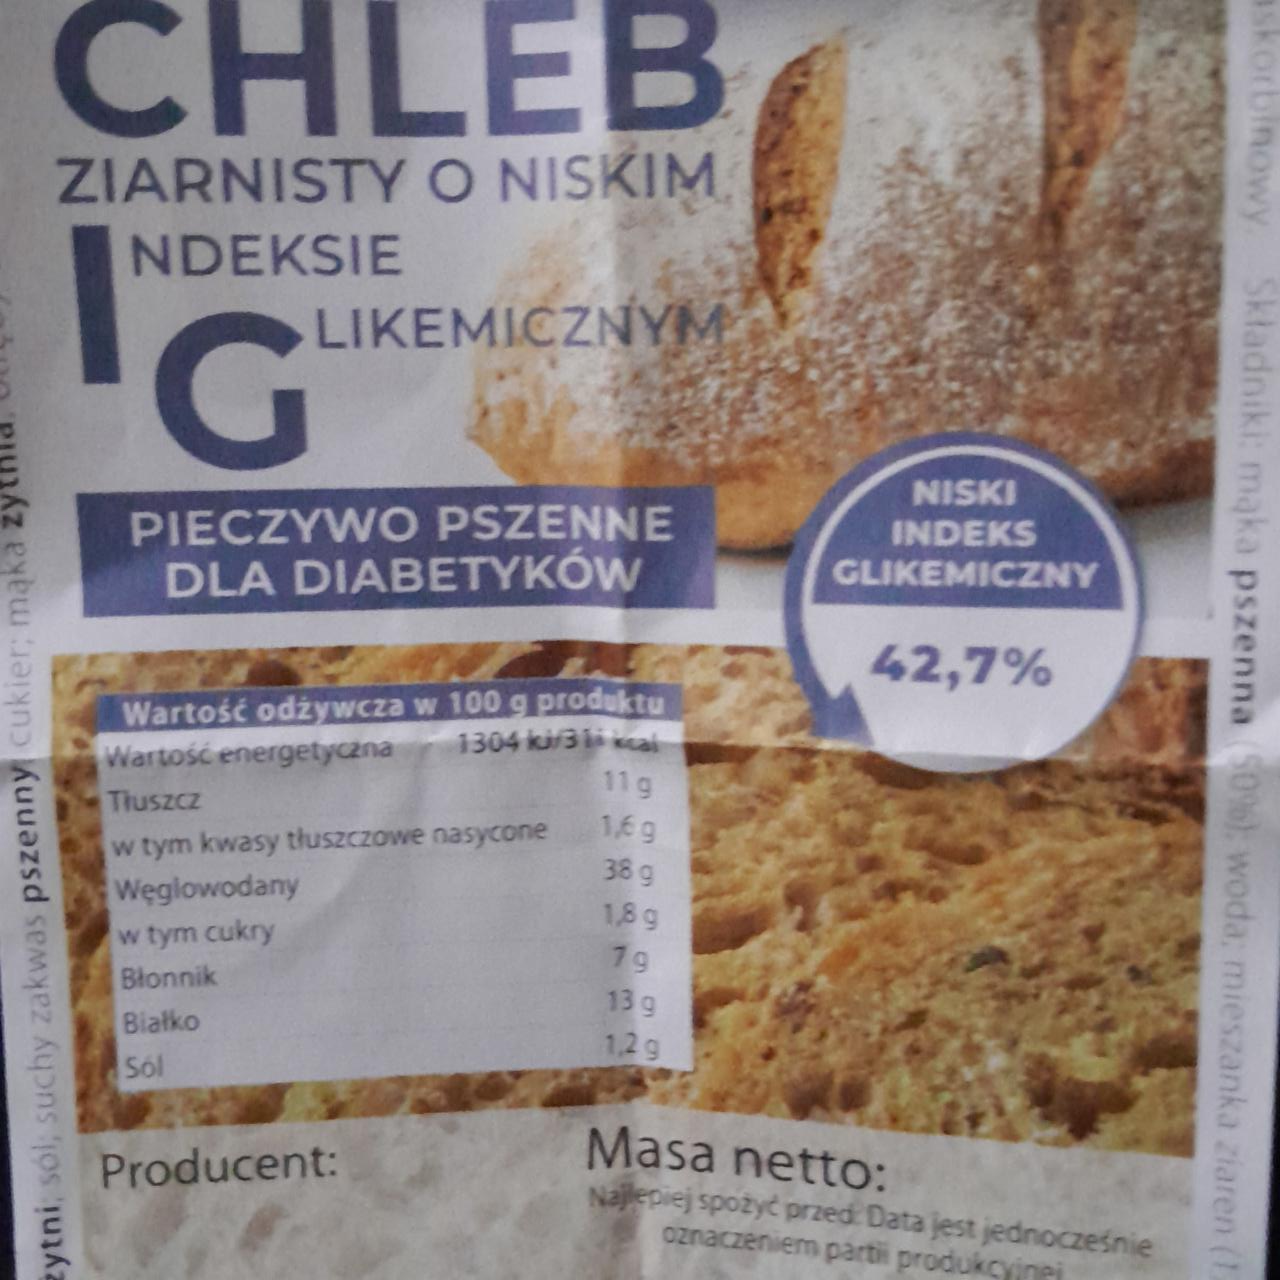 Zdjęcia - Chleb ziarnisty o niskiem indeksie glikemicznym Piekarnia Olszyna